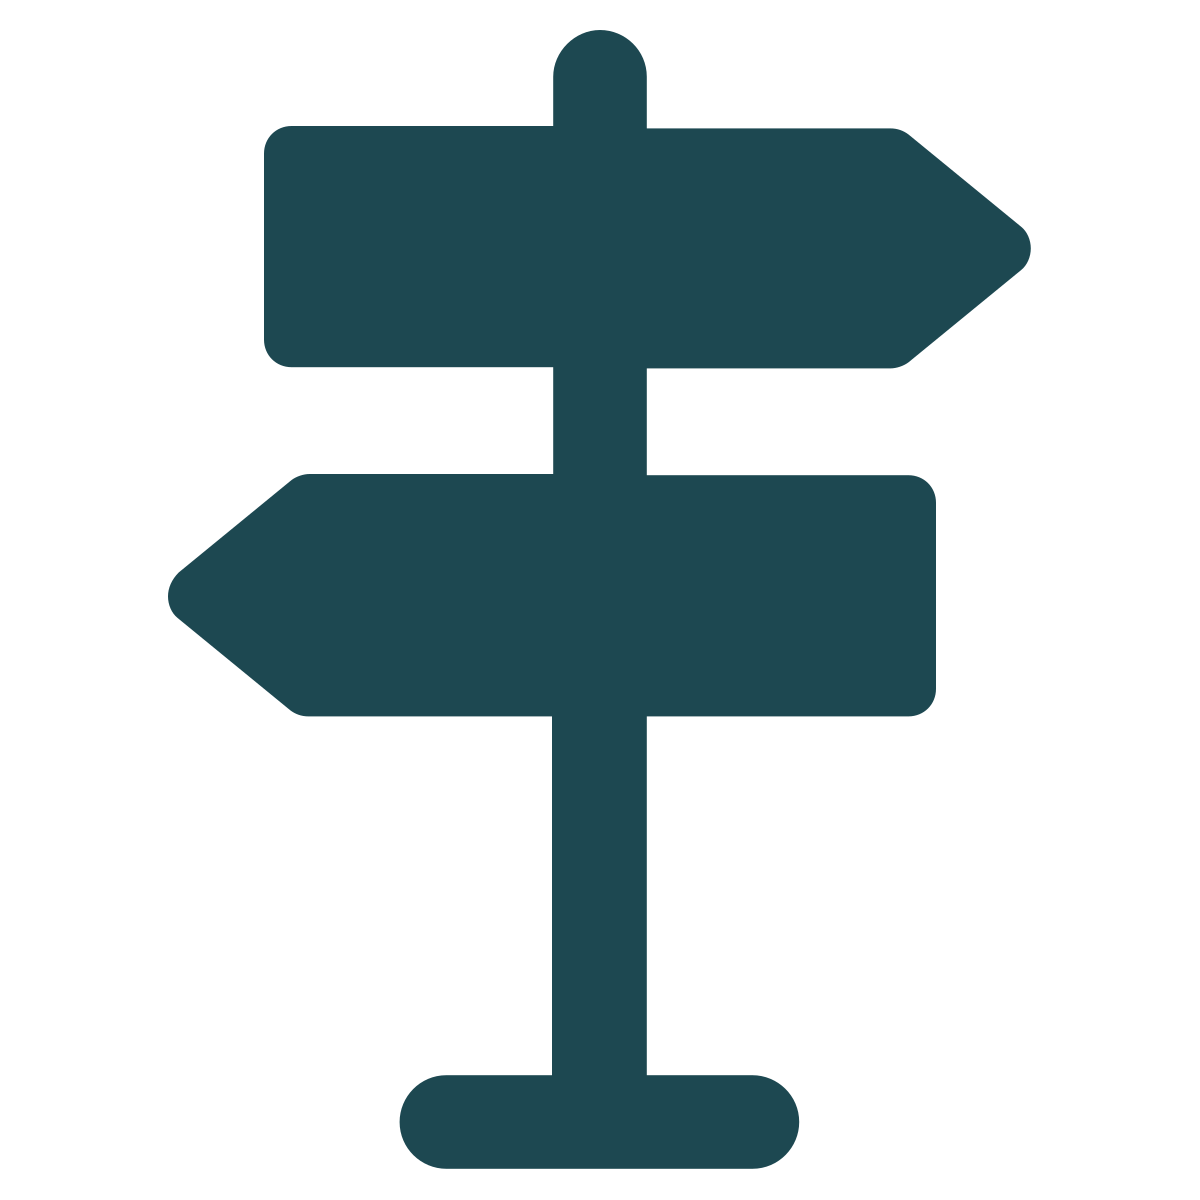 Tecknad symbol på vägskyltar som pekar åt varsitt håll.